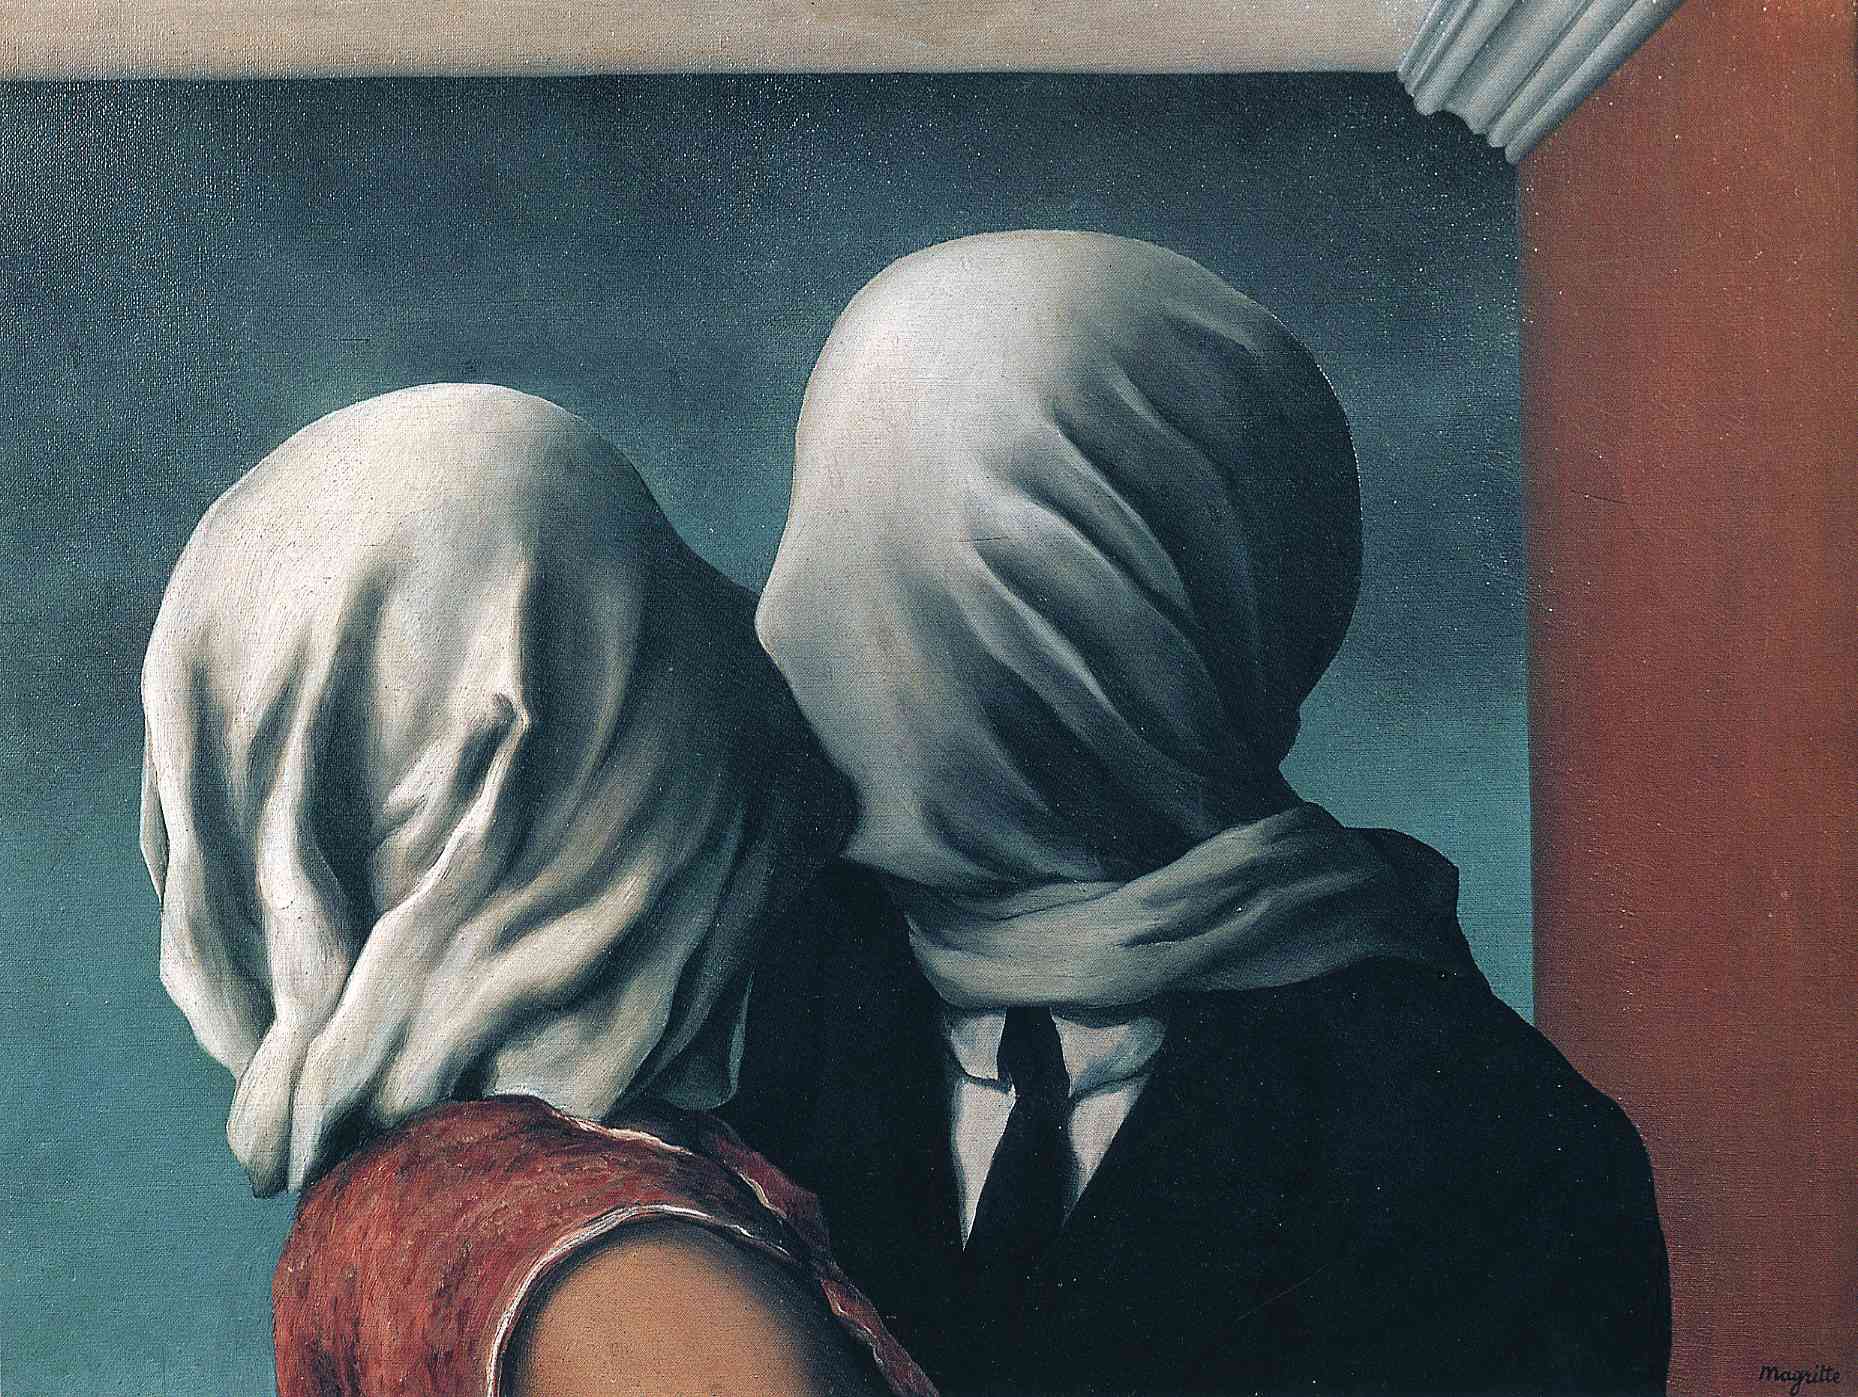 les amants by René Magritte - 1928 -  54 x 73.4 cm Museum of Modern Art